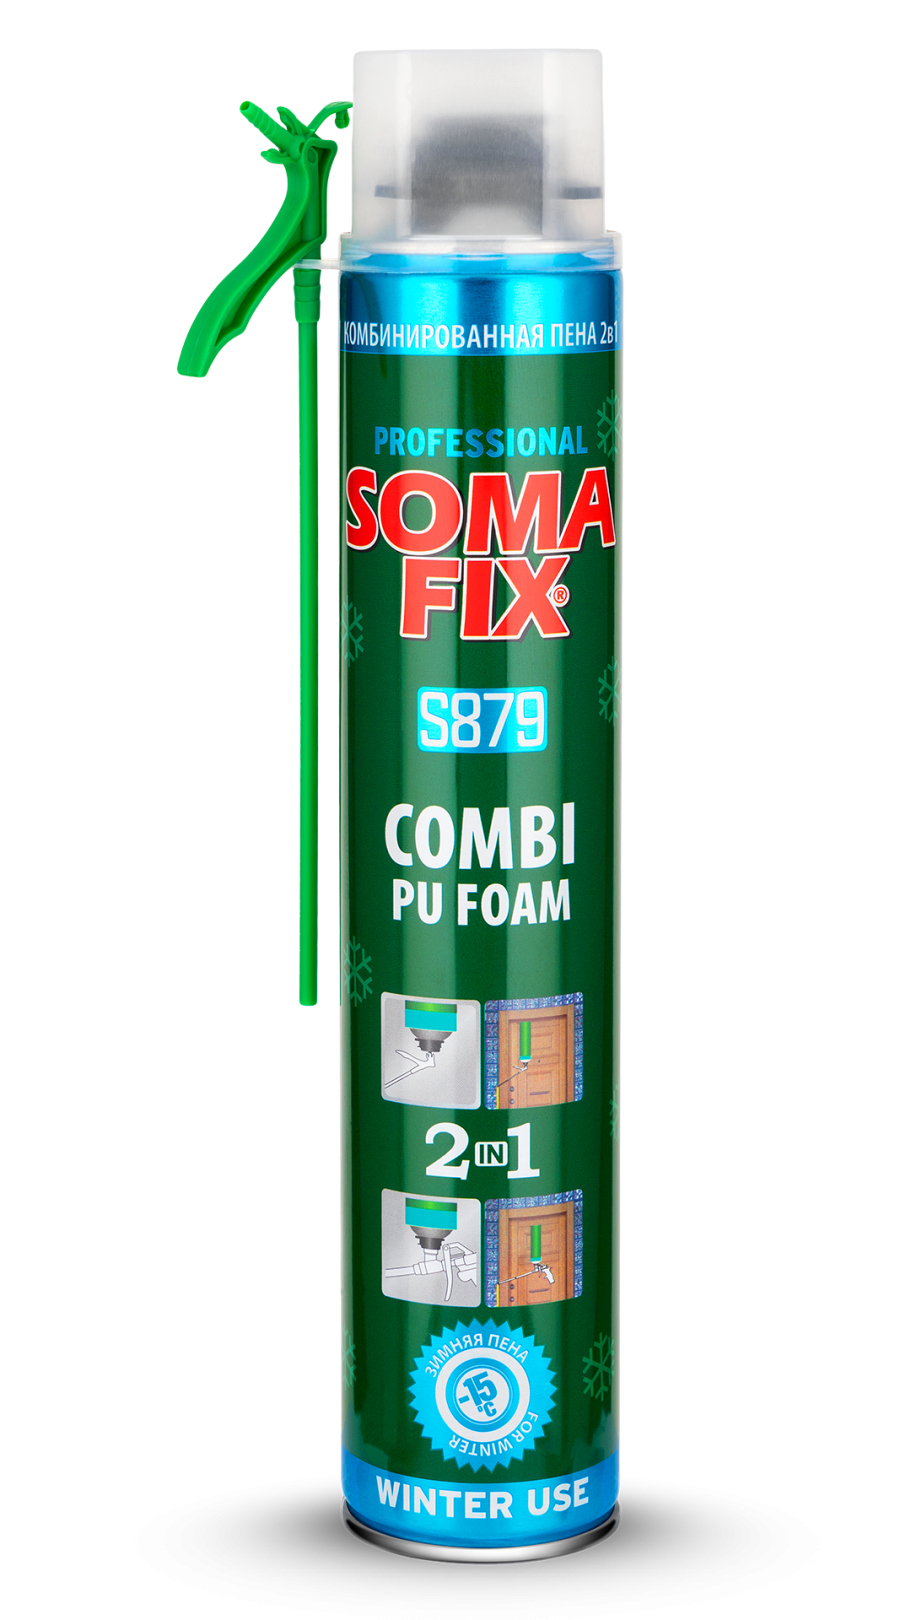 Somafix Combi Valfli Kışlık Poliüretan Köpük S879